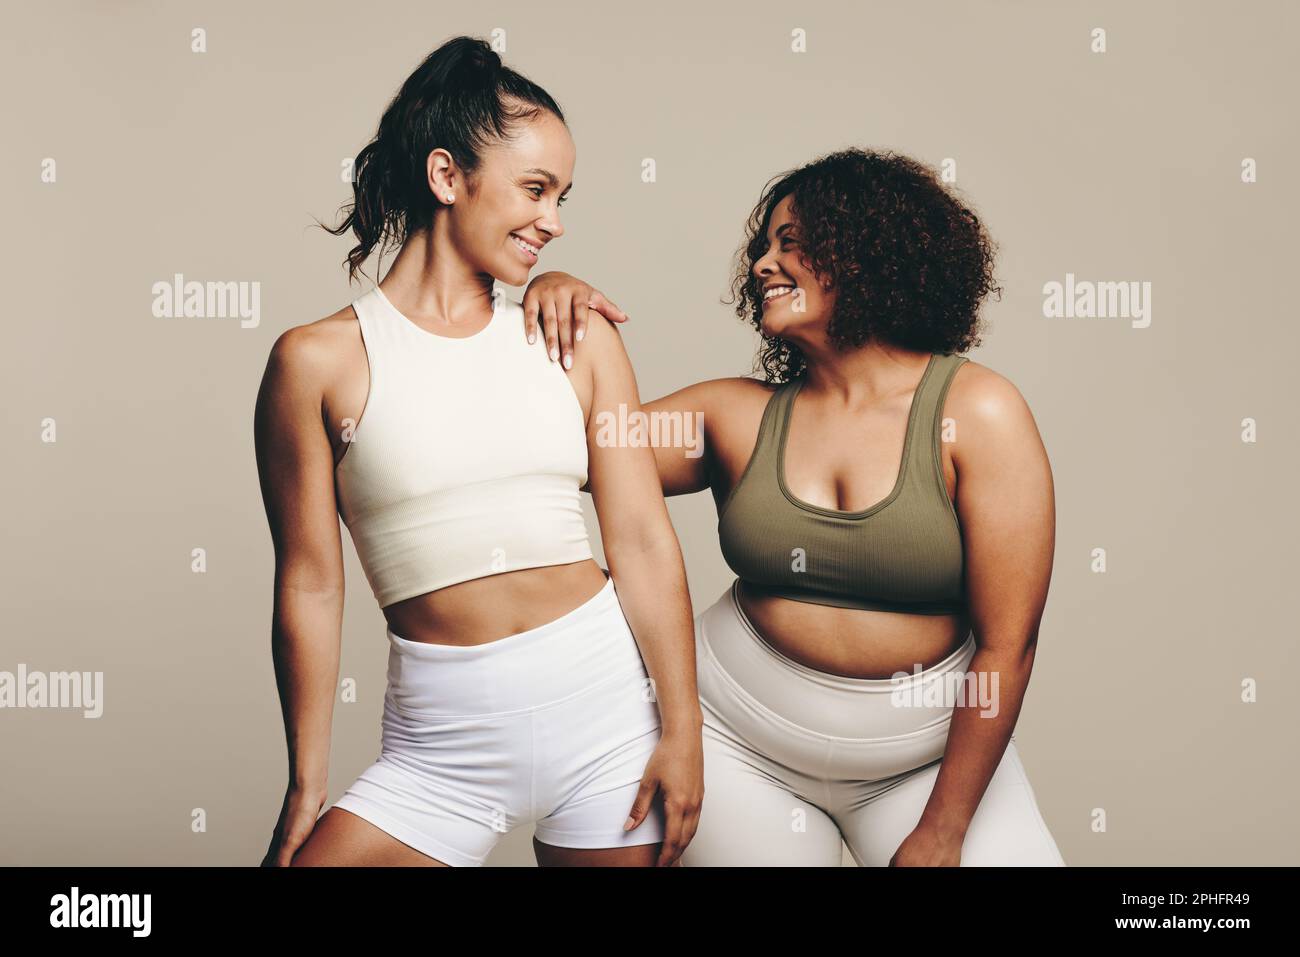 Les athlètes féminins de différentes formes de corps sourient lorsqu'ils se tiennent ensemble, vêtus d'un équipement d'entraînement. Deux jeunes femmes confiantes montrant leur dévouement à l'fi Banque D'Images